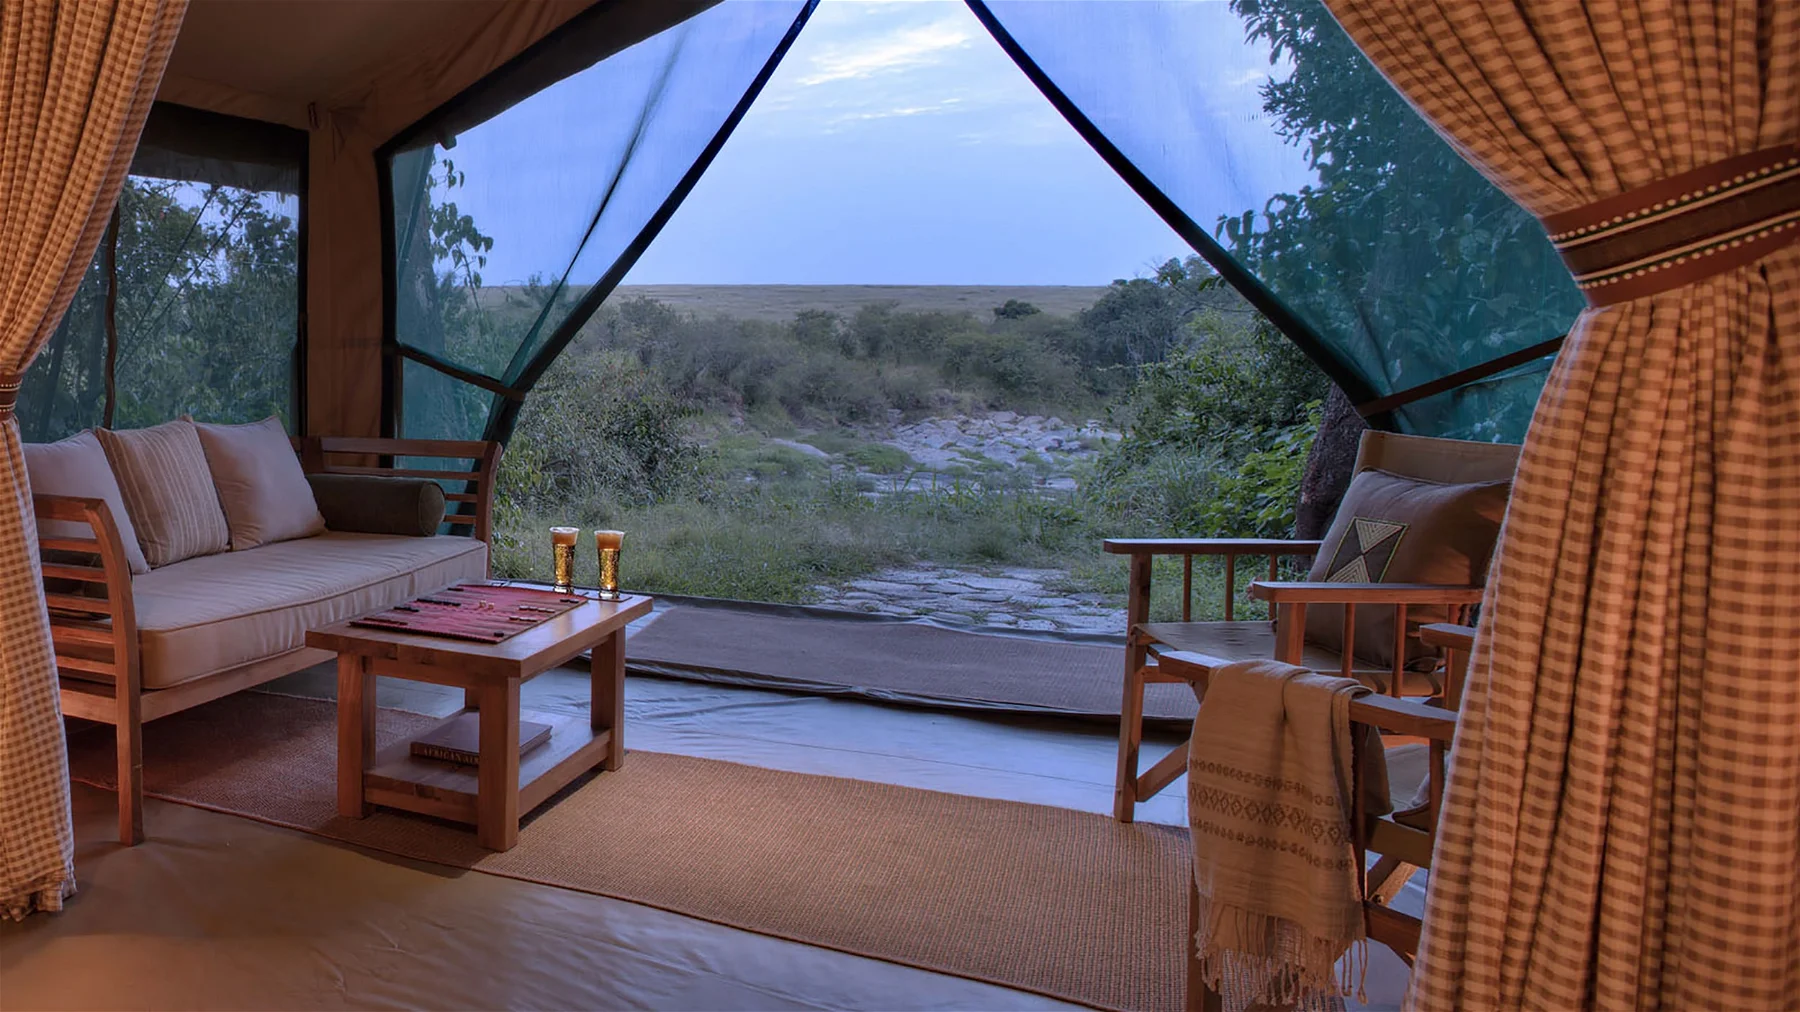 Maasai Mara National Park Accommodations